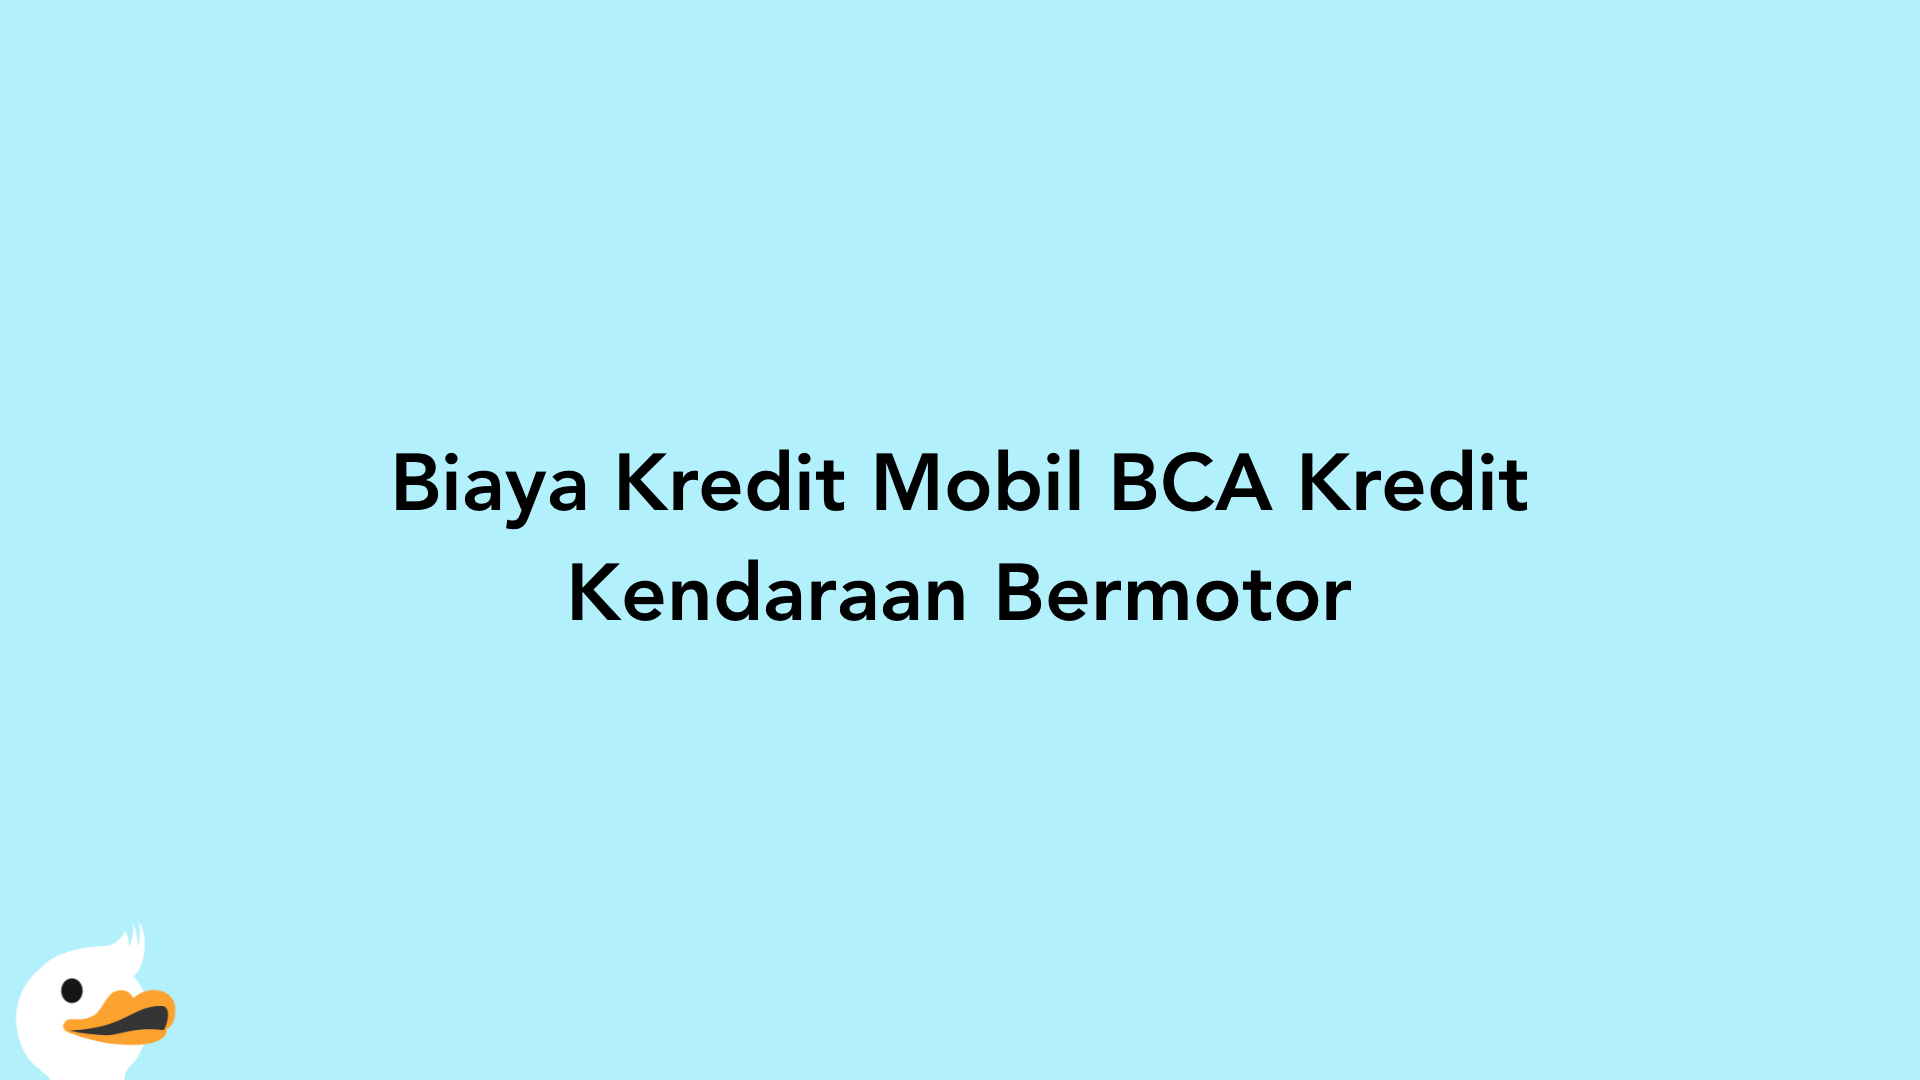 Biaya Kredit Mobil BCA Kredit Kendaraan Bermotor